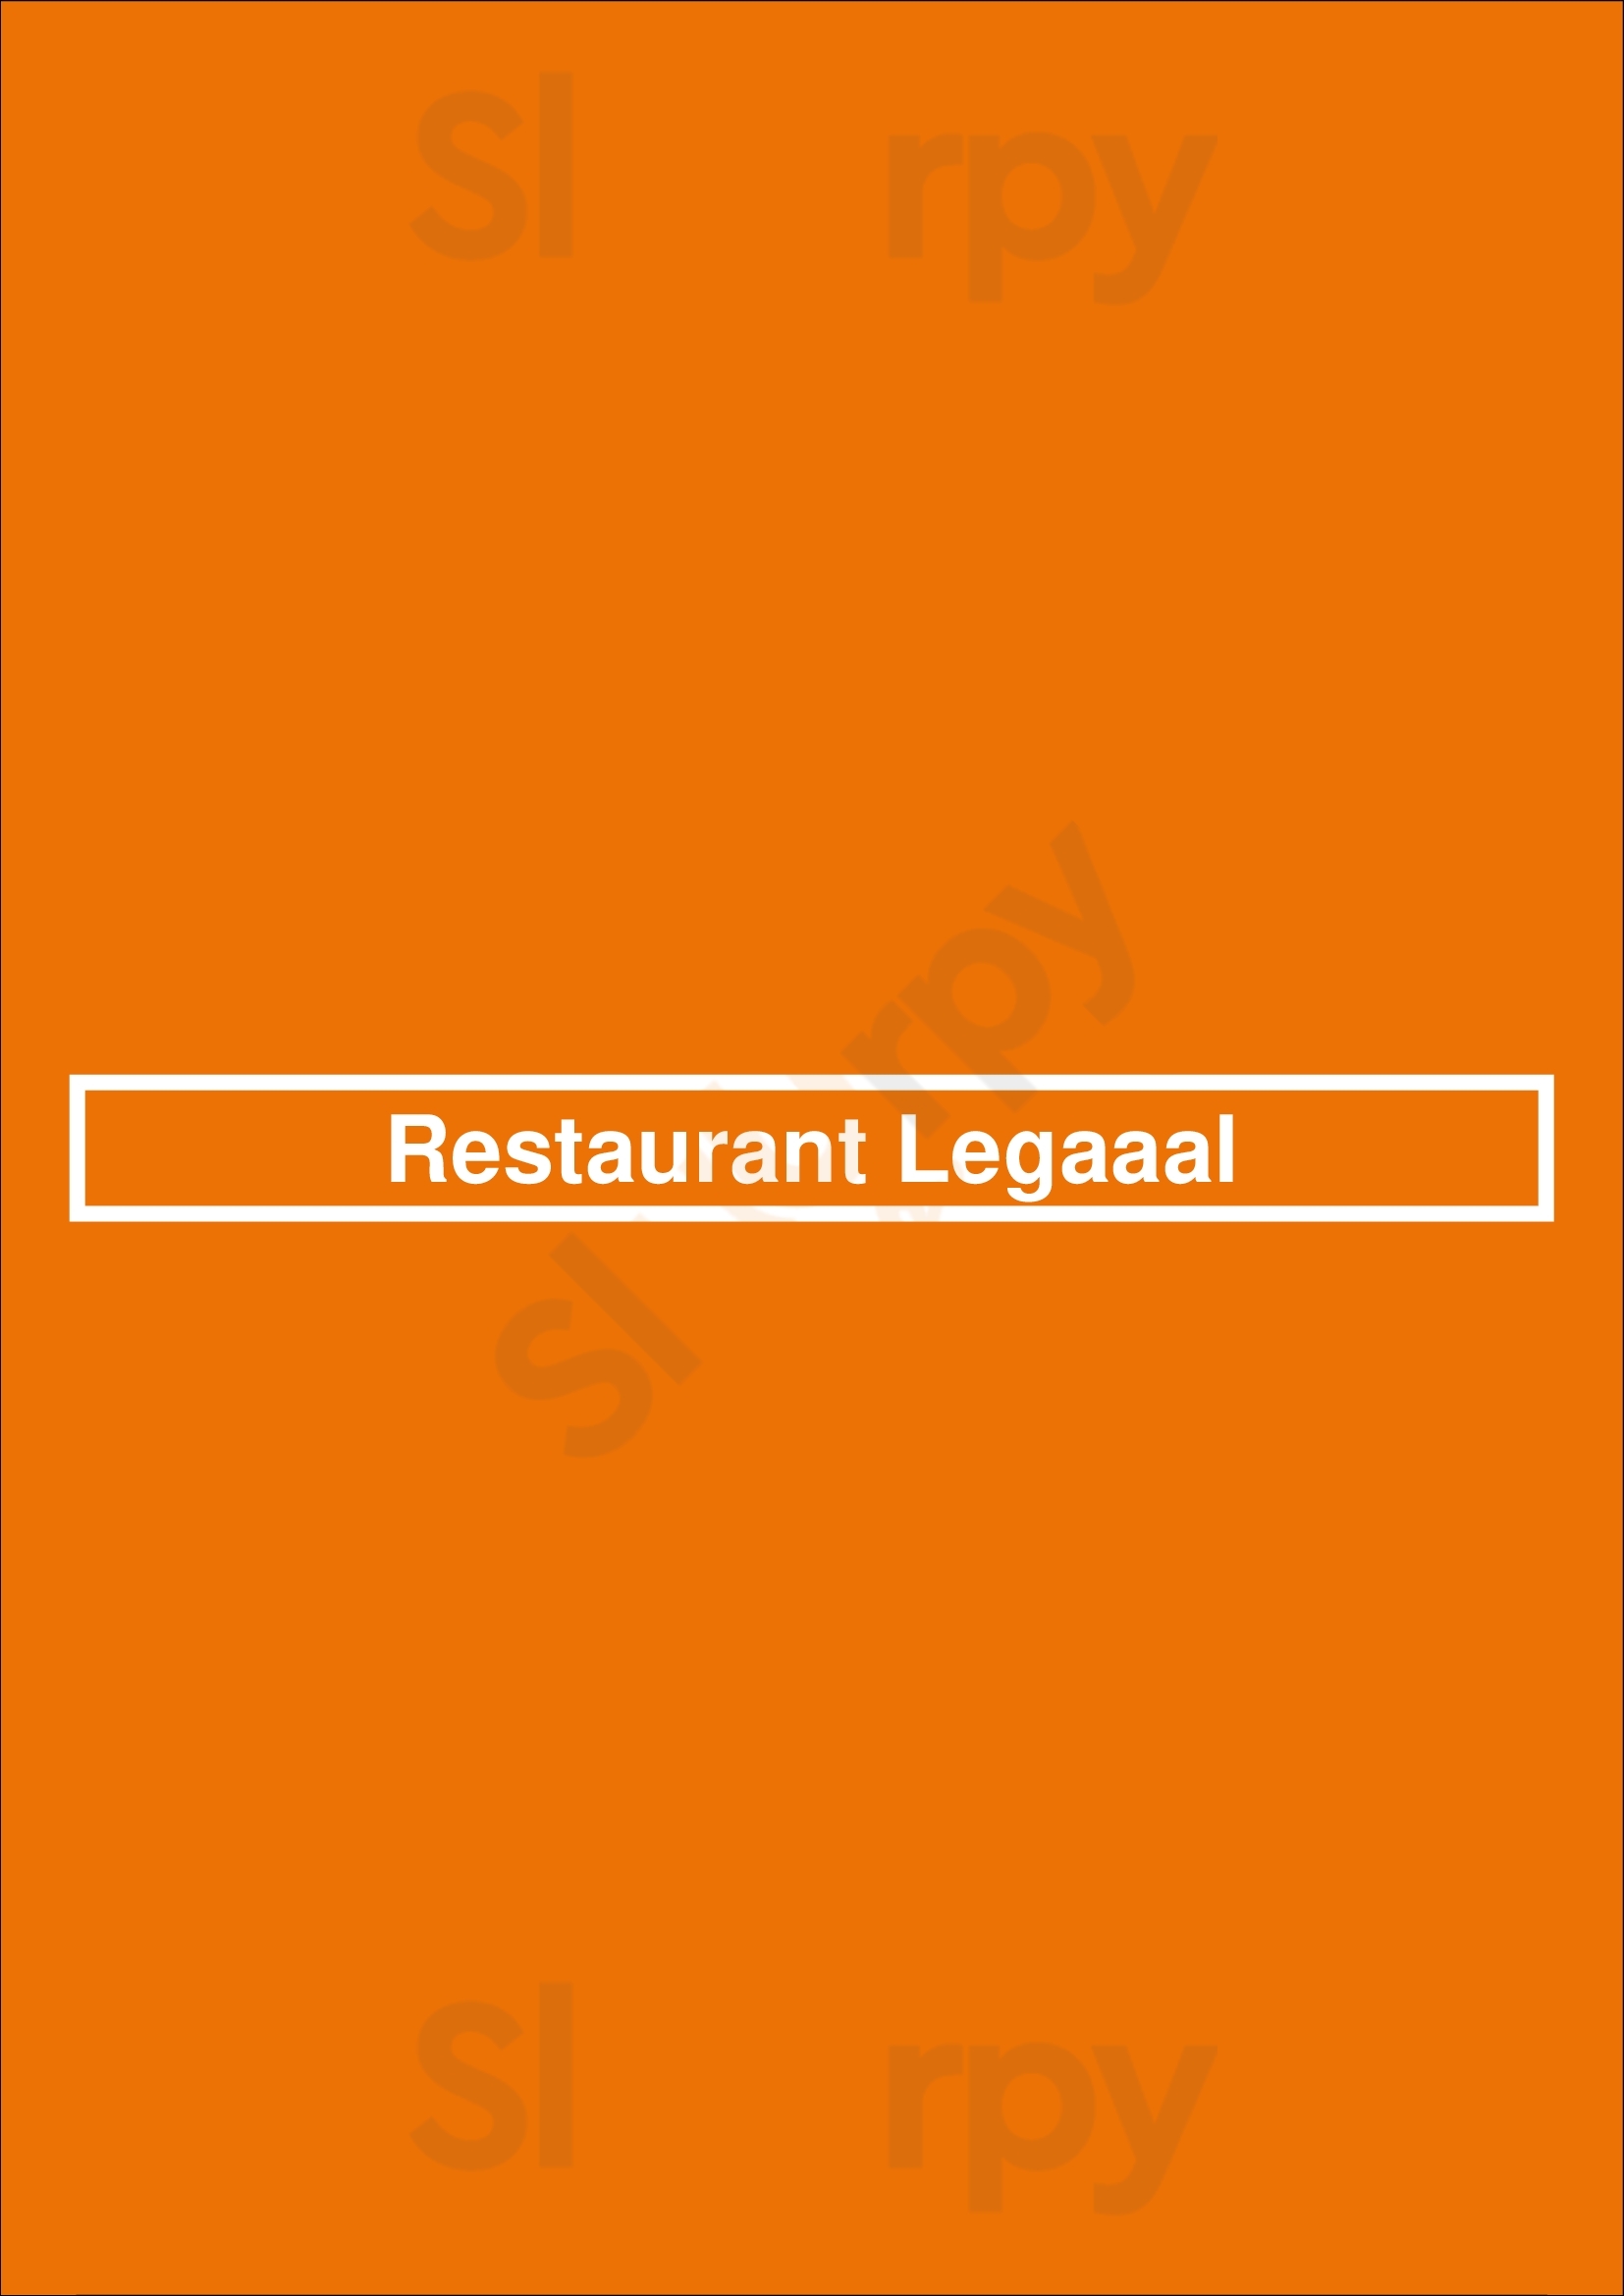 Restaurant Legaaal Lisboa Menu - 1